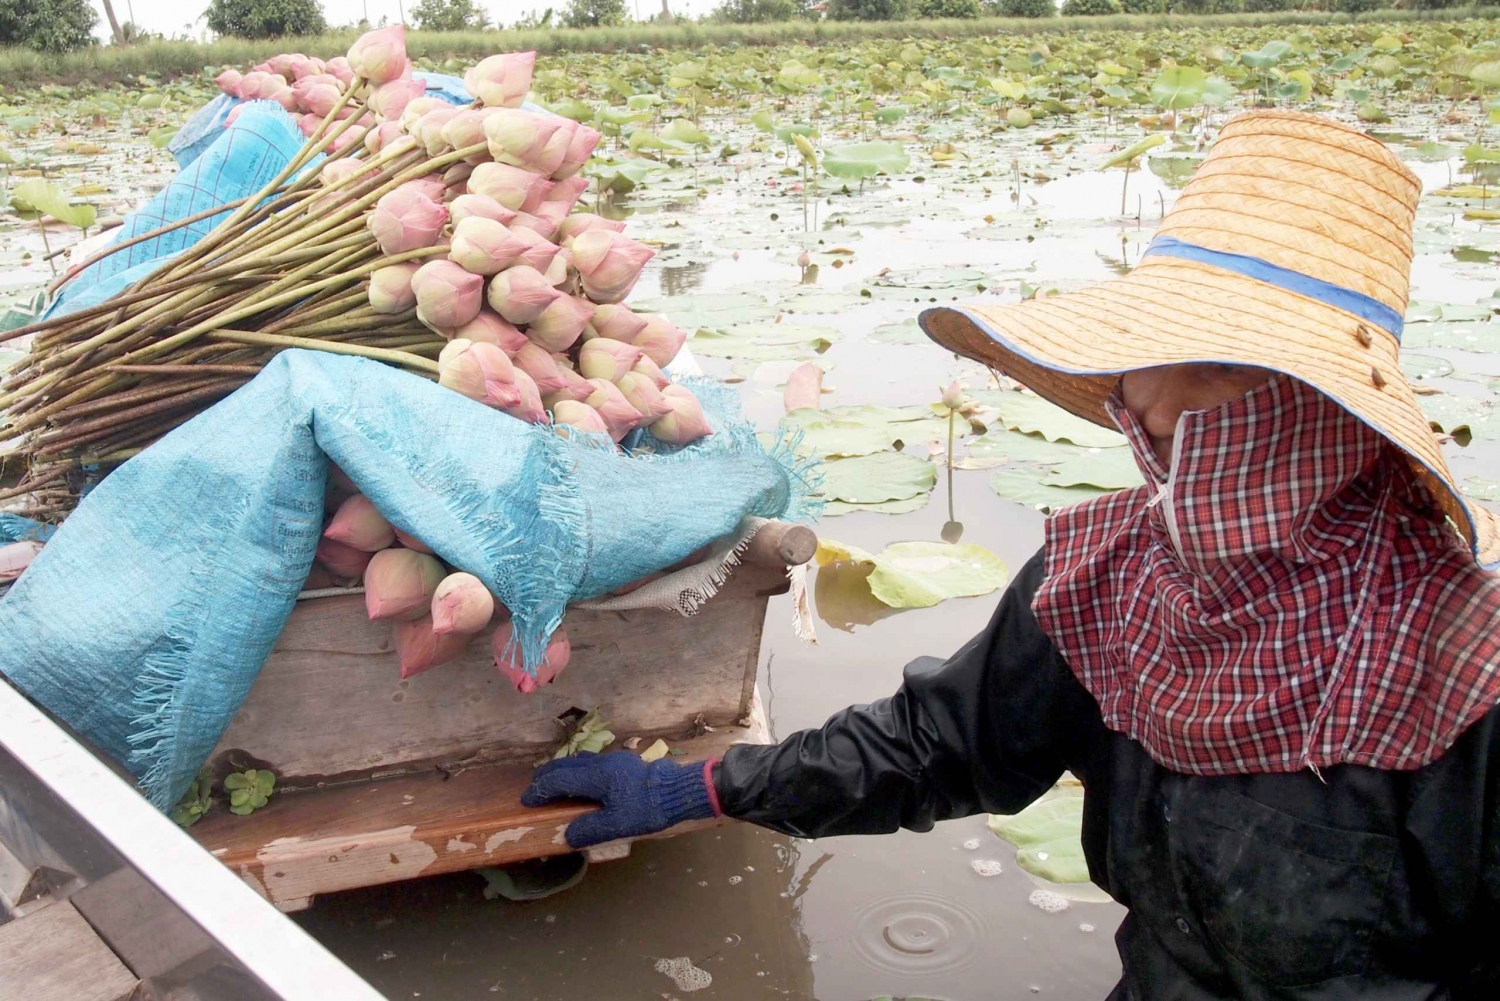 De Bangkok: Canal Mahasawat e fazenda com almoço